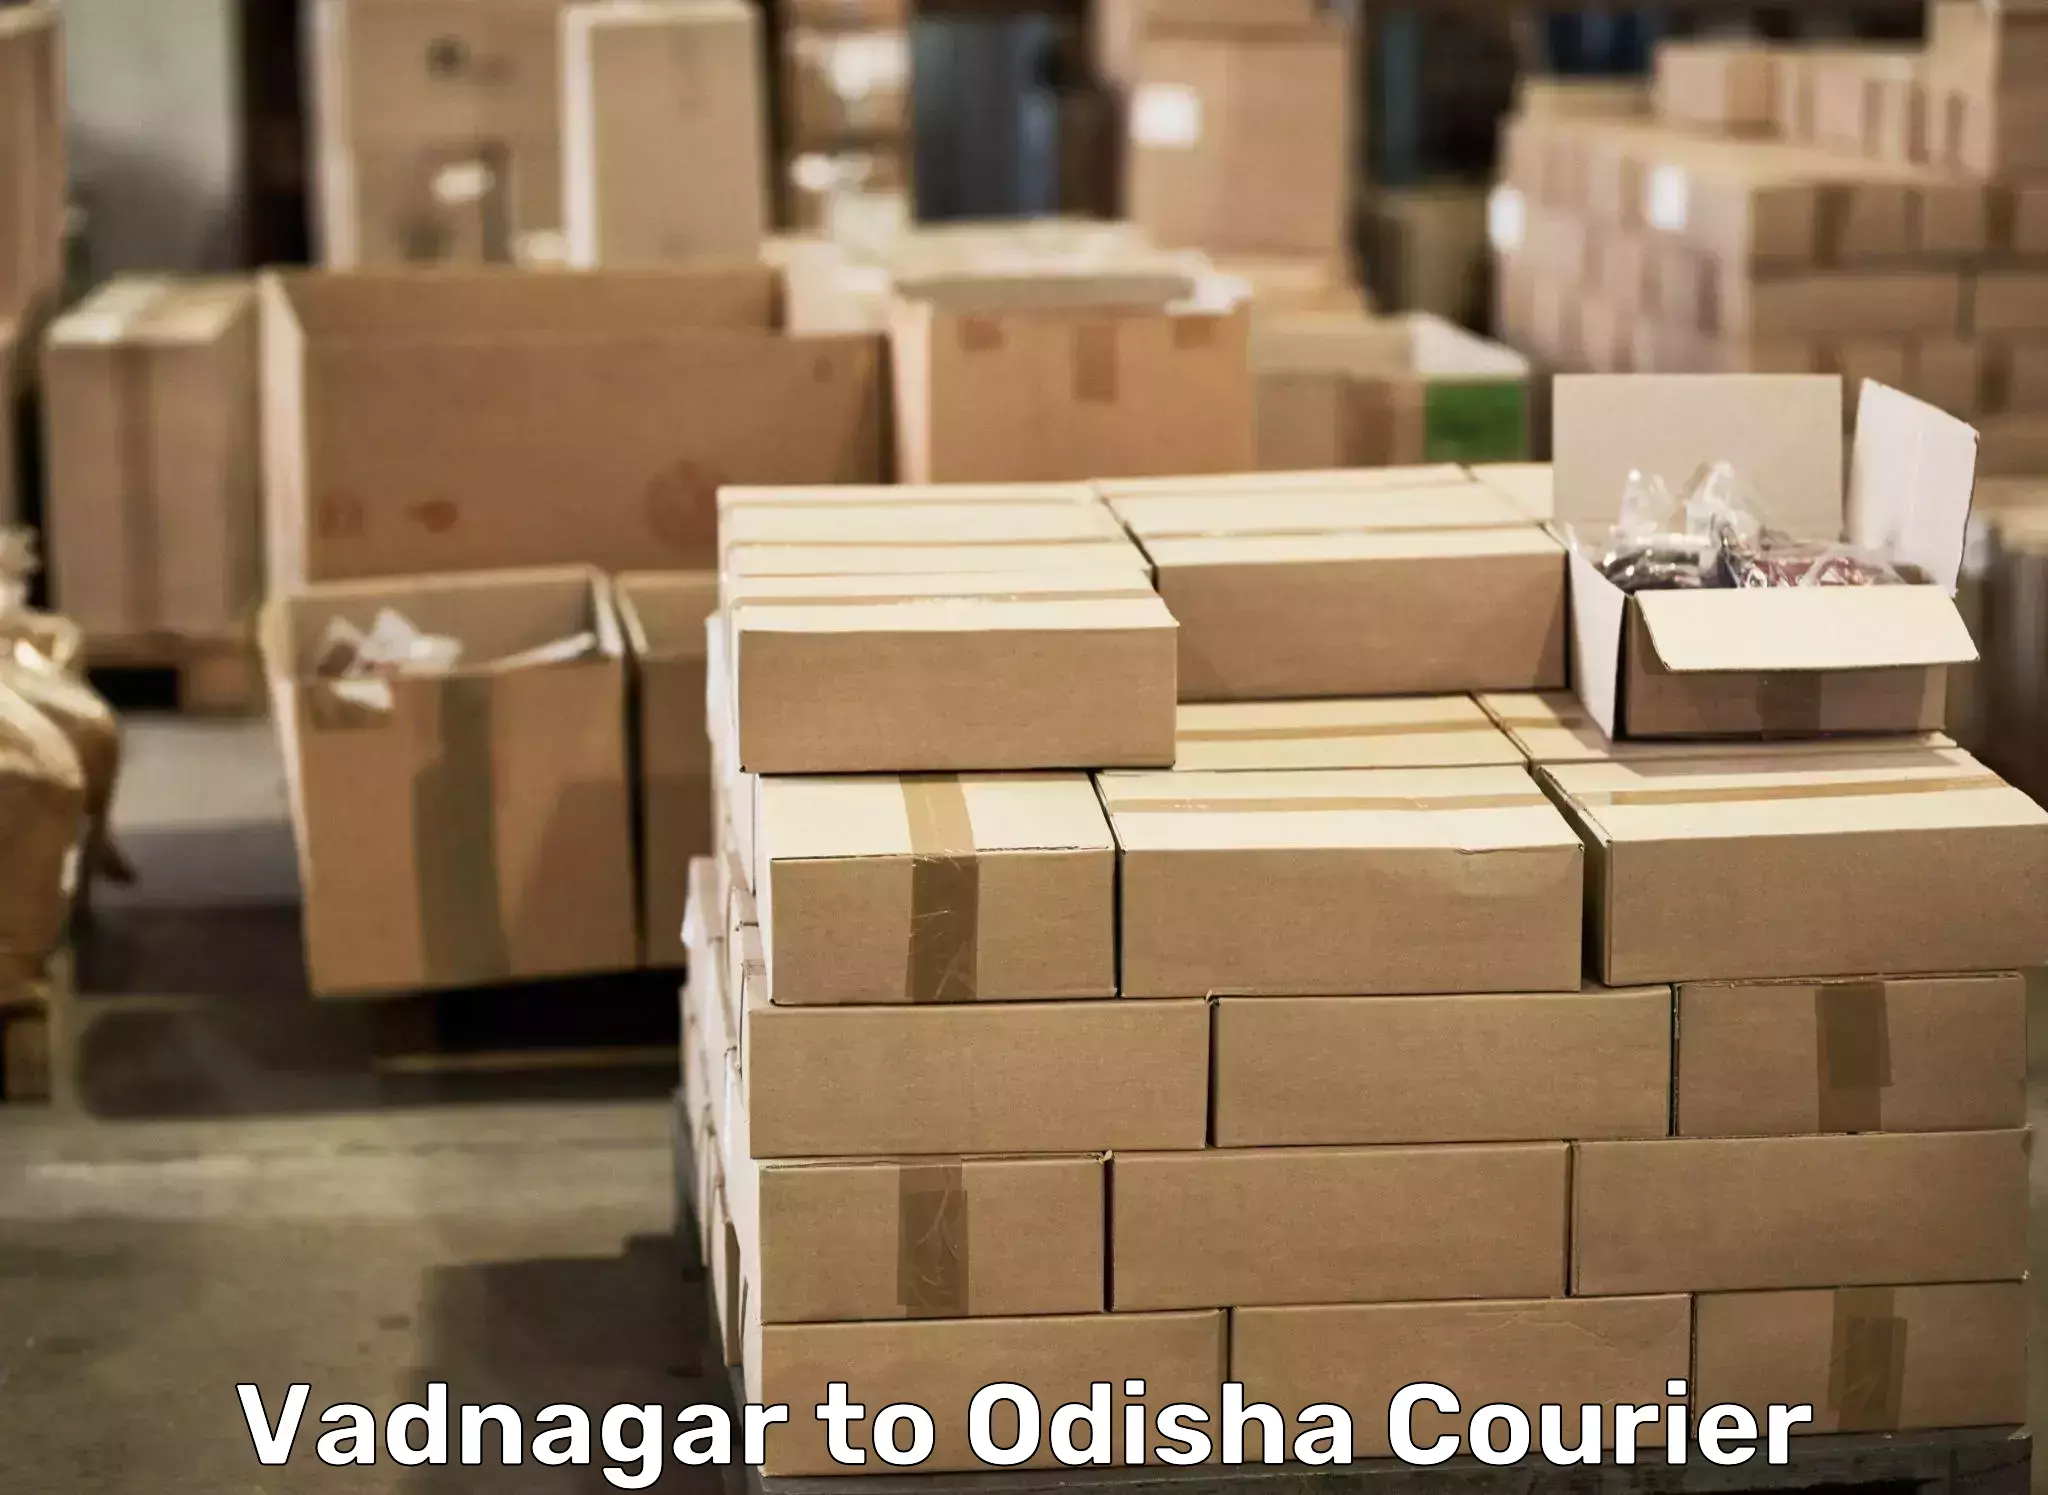 Full-service furniture transport Vadnagar to Pipili